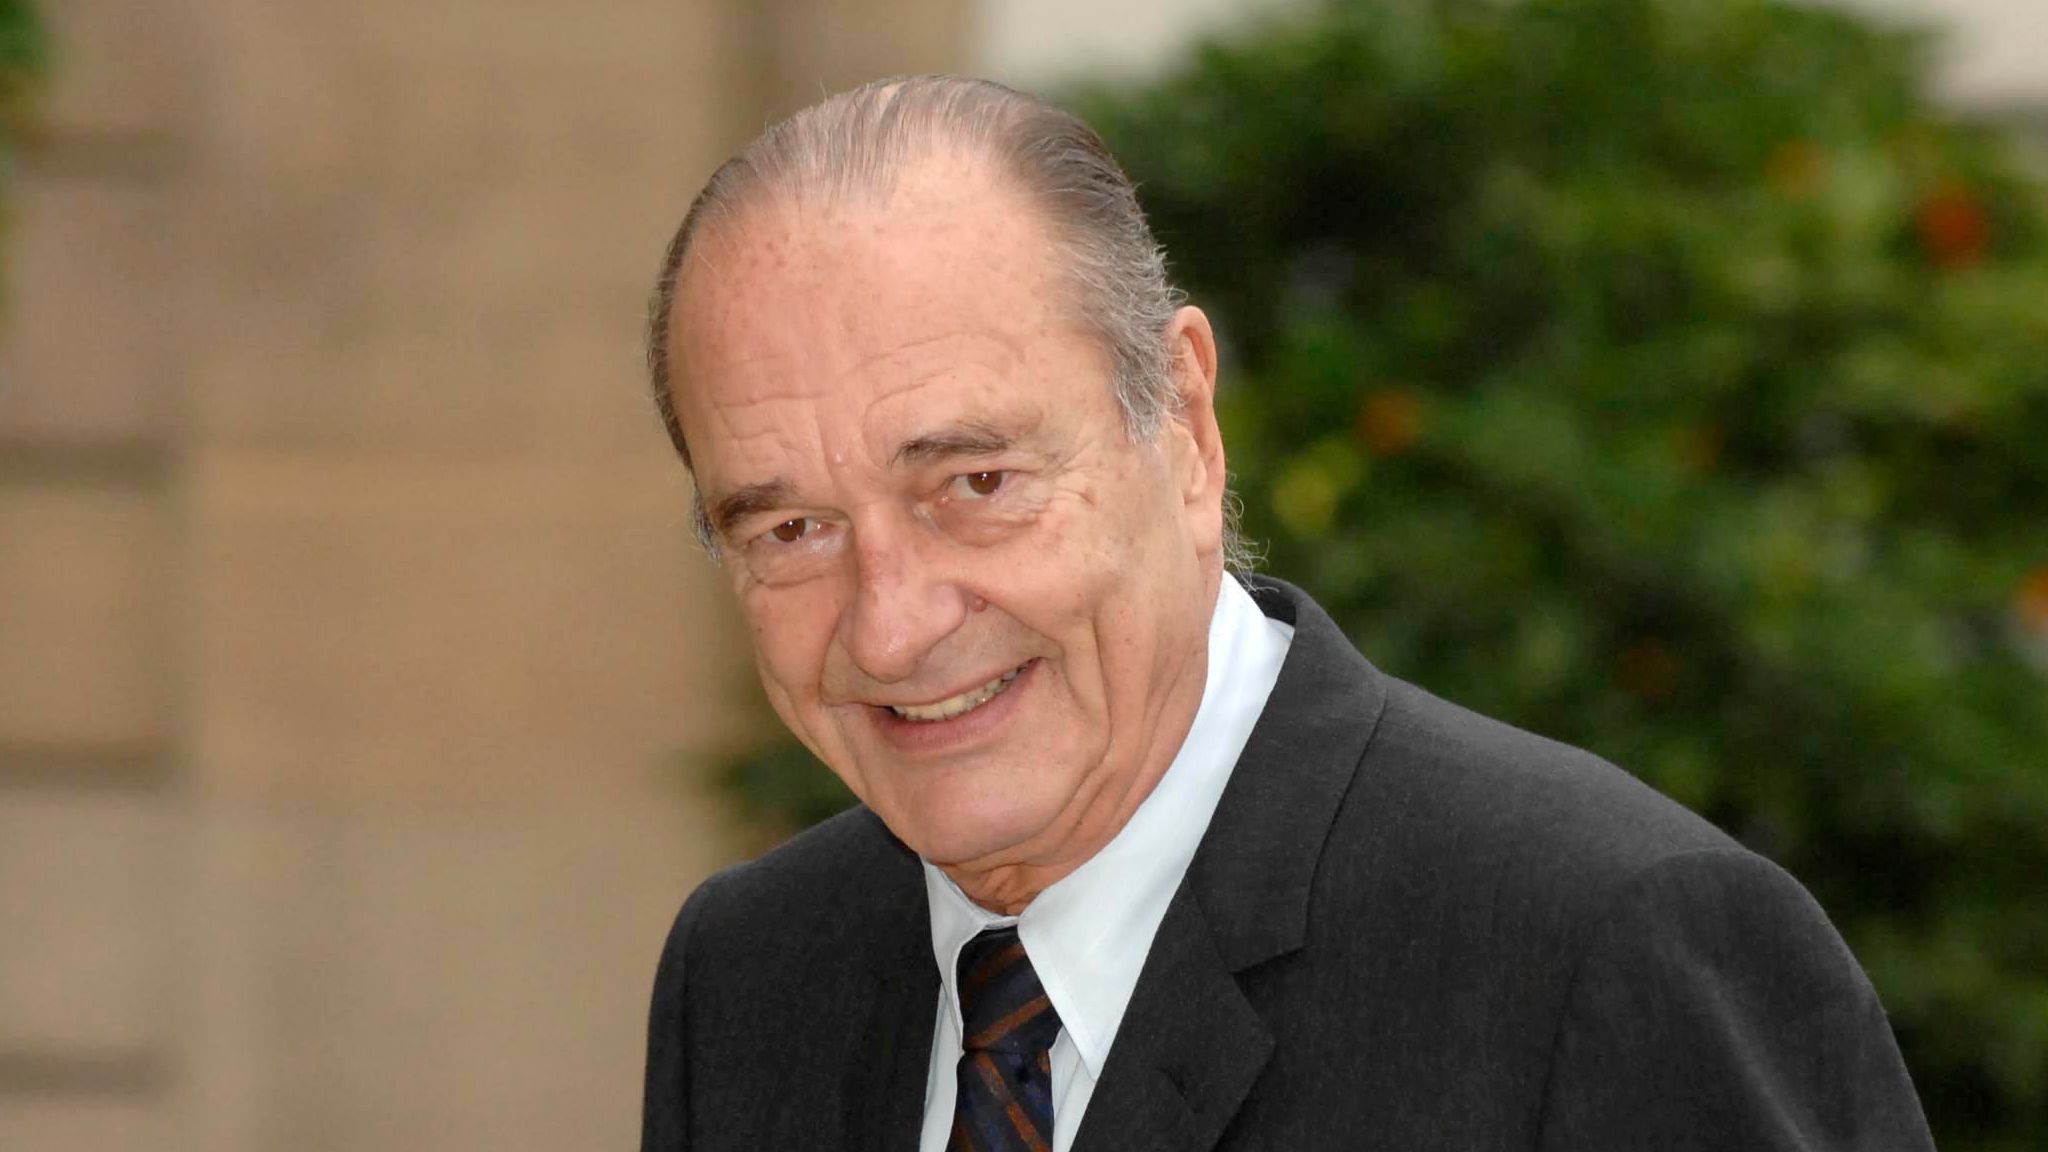 Jacques Chirac "amoureux" d'une journaliste : "Ca a été une affaire importante"